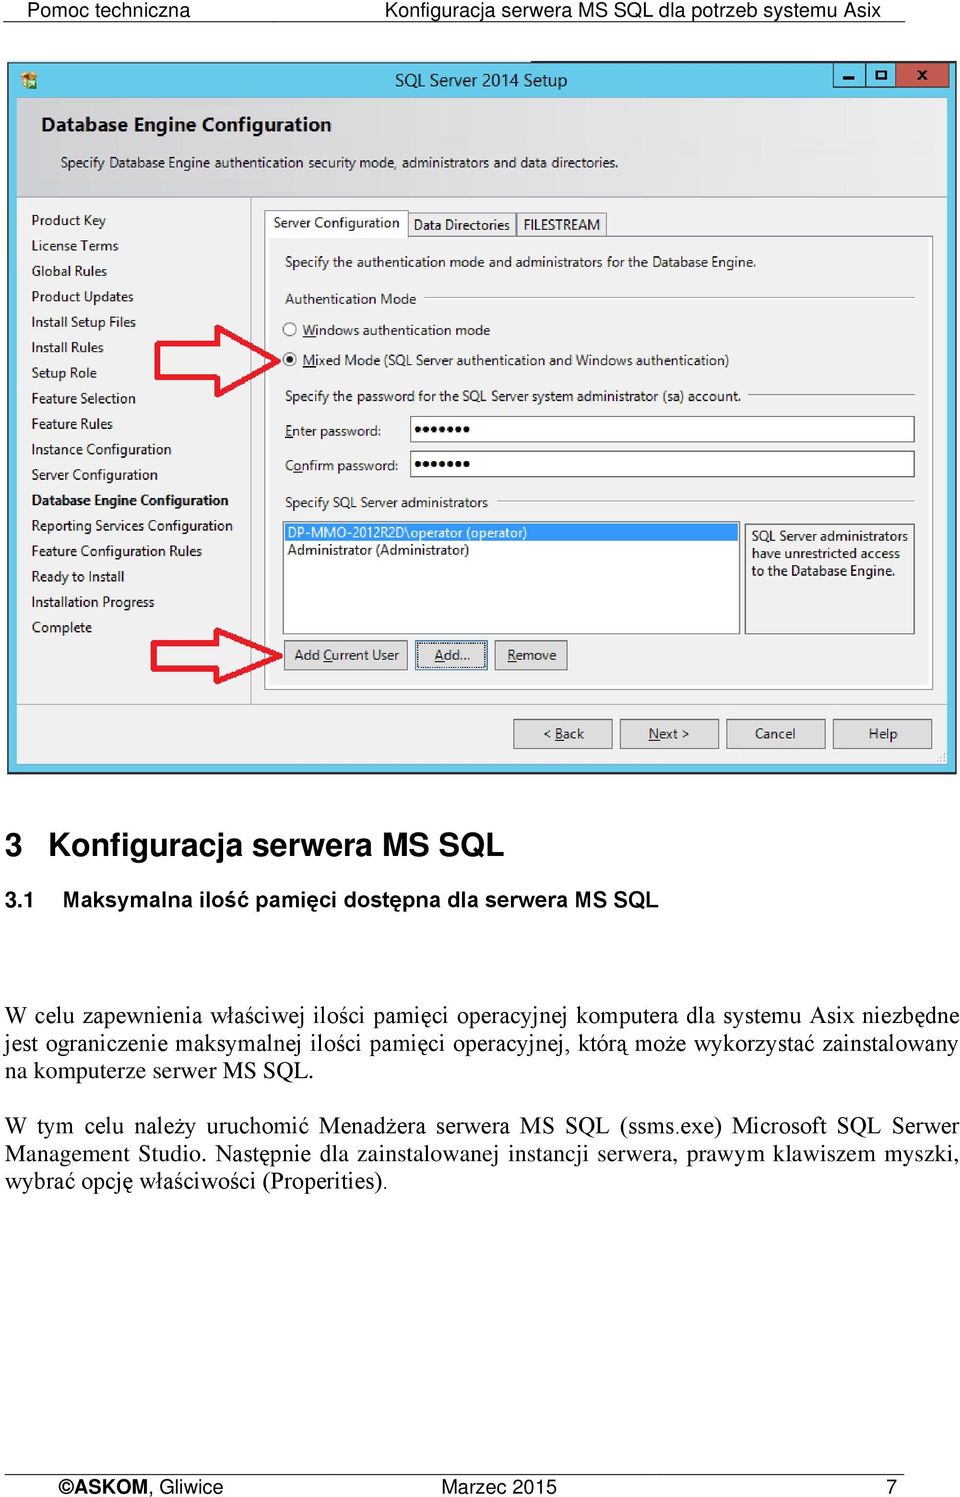 ograniczenie maksymalnej ilości pamięci operacyjnej, którą może wykorzystać zainstalowany na komputerze serwer MS SQL.